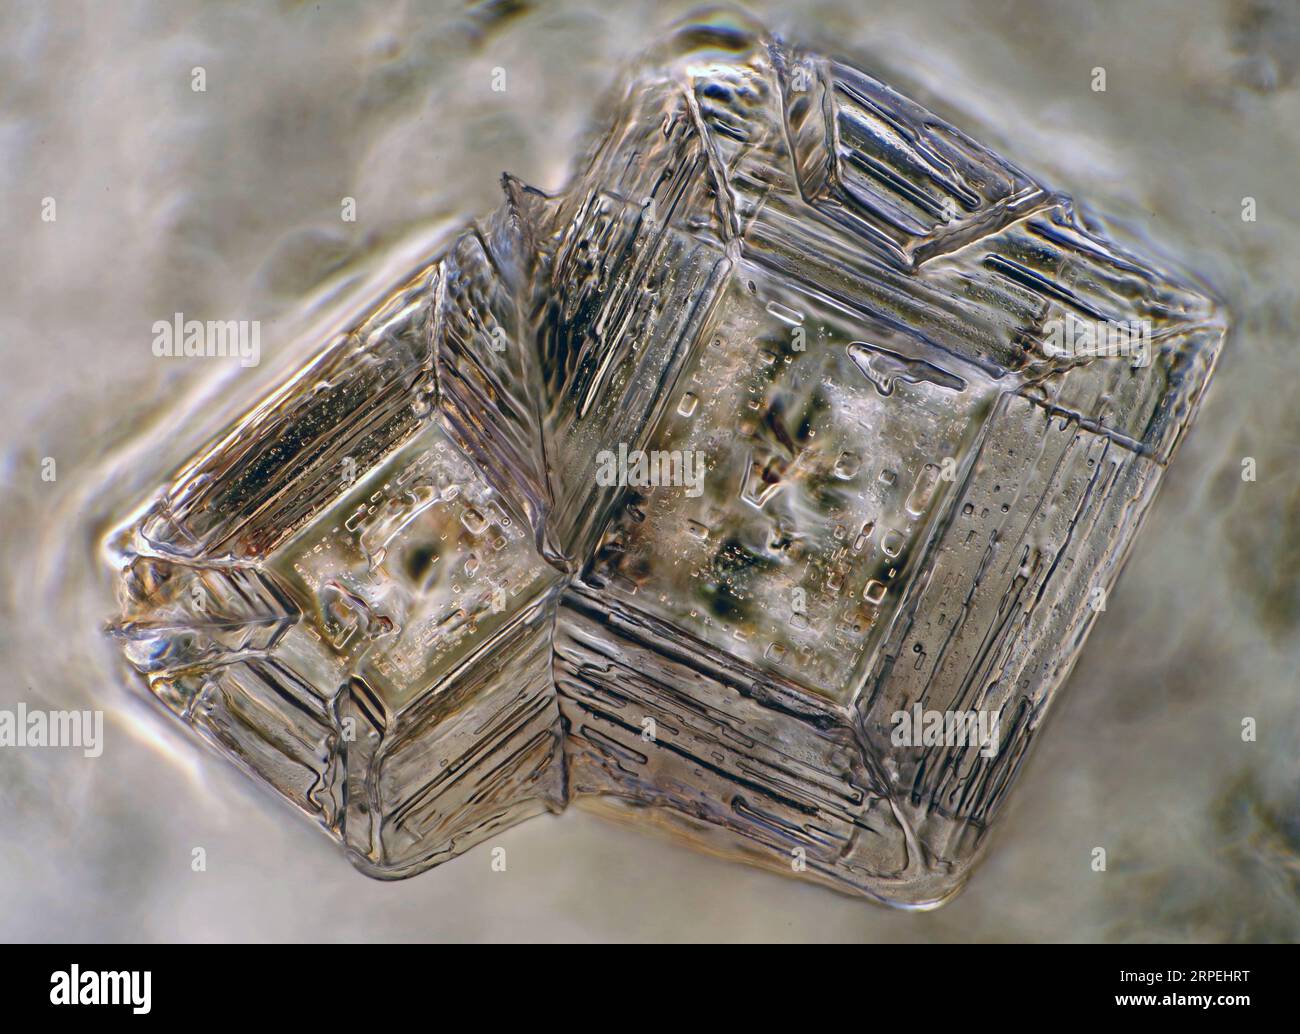 Das Bild zeigt zwei Kristalle aus rekristallisiertem Salz, die durch das Mikroskop in polarisiertem Licht mit einer Vergrößerung von 100X aufgenommen wurden Stockfoto